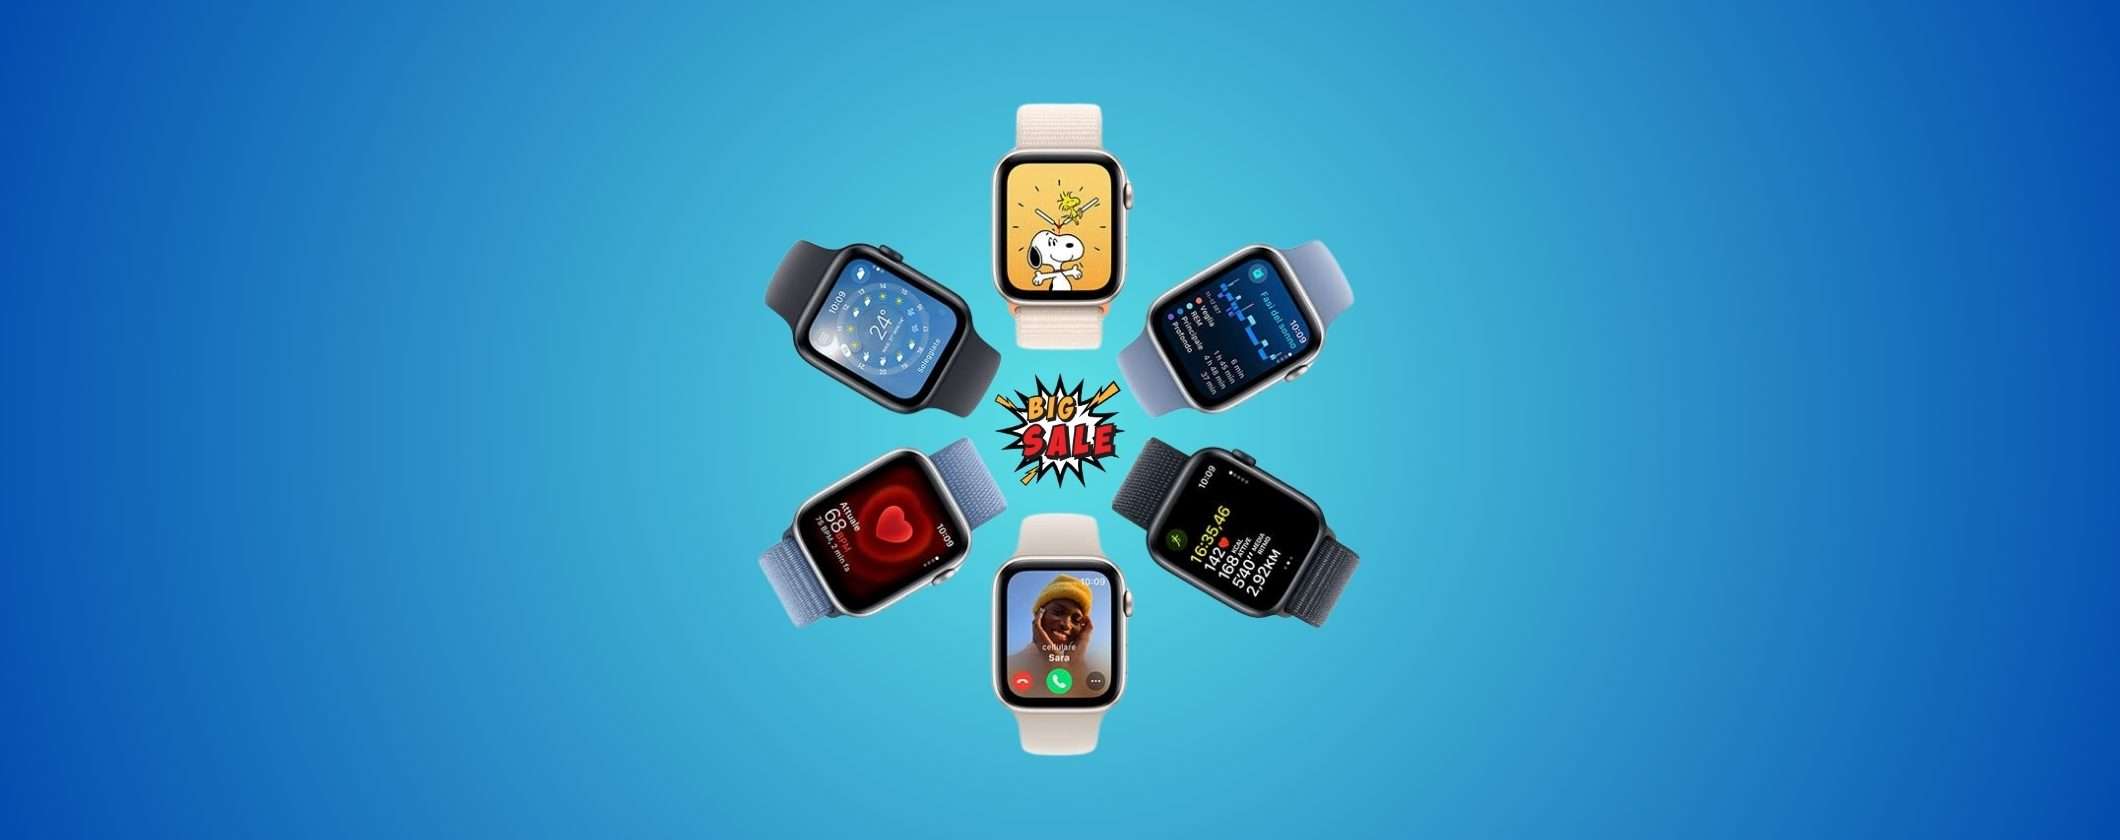 Apple Watch SE 2: prezzo in CADUTA LIBERA su Amazon